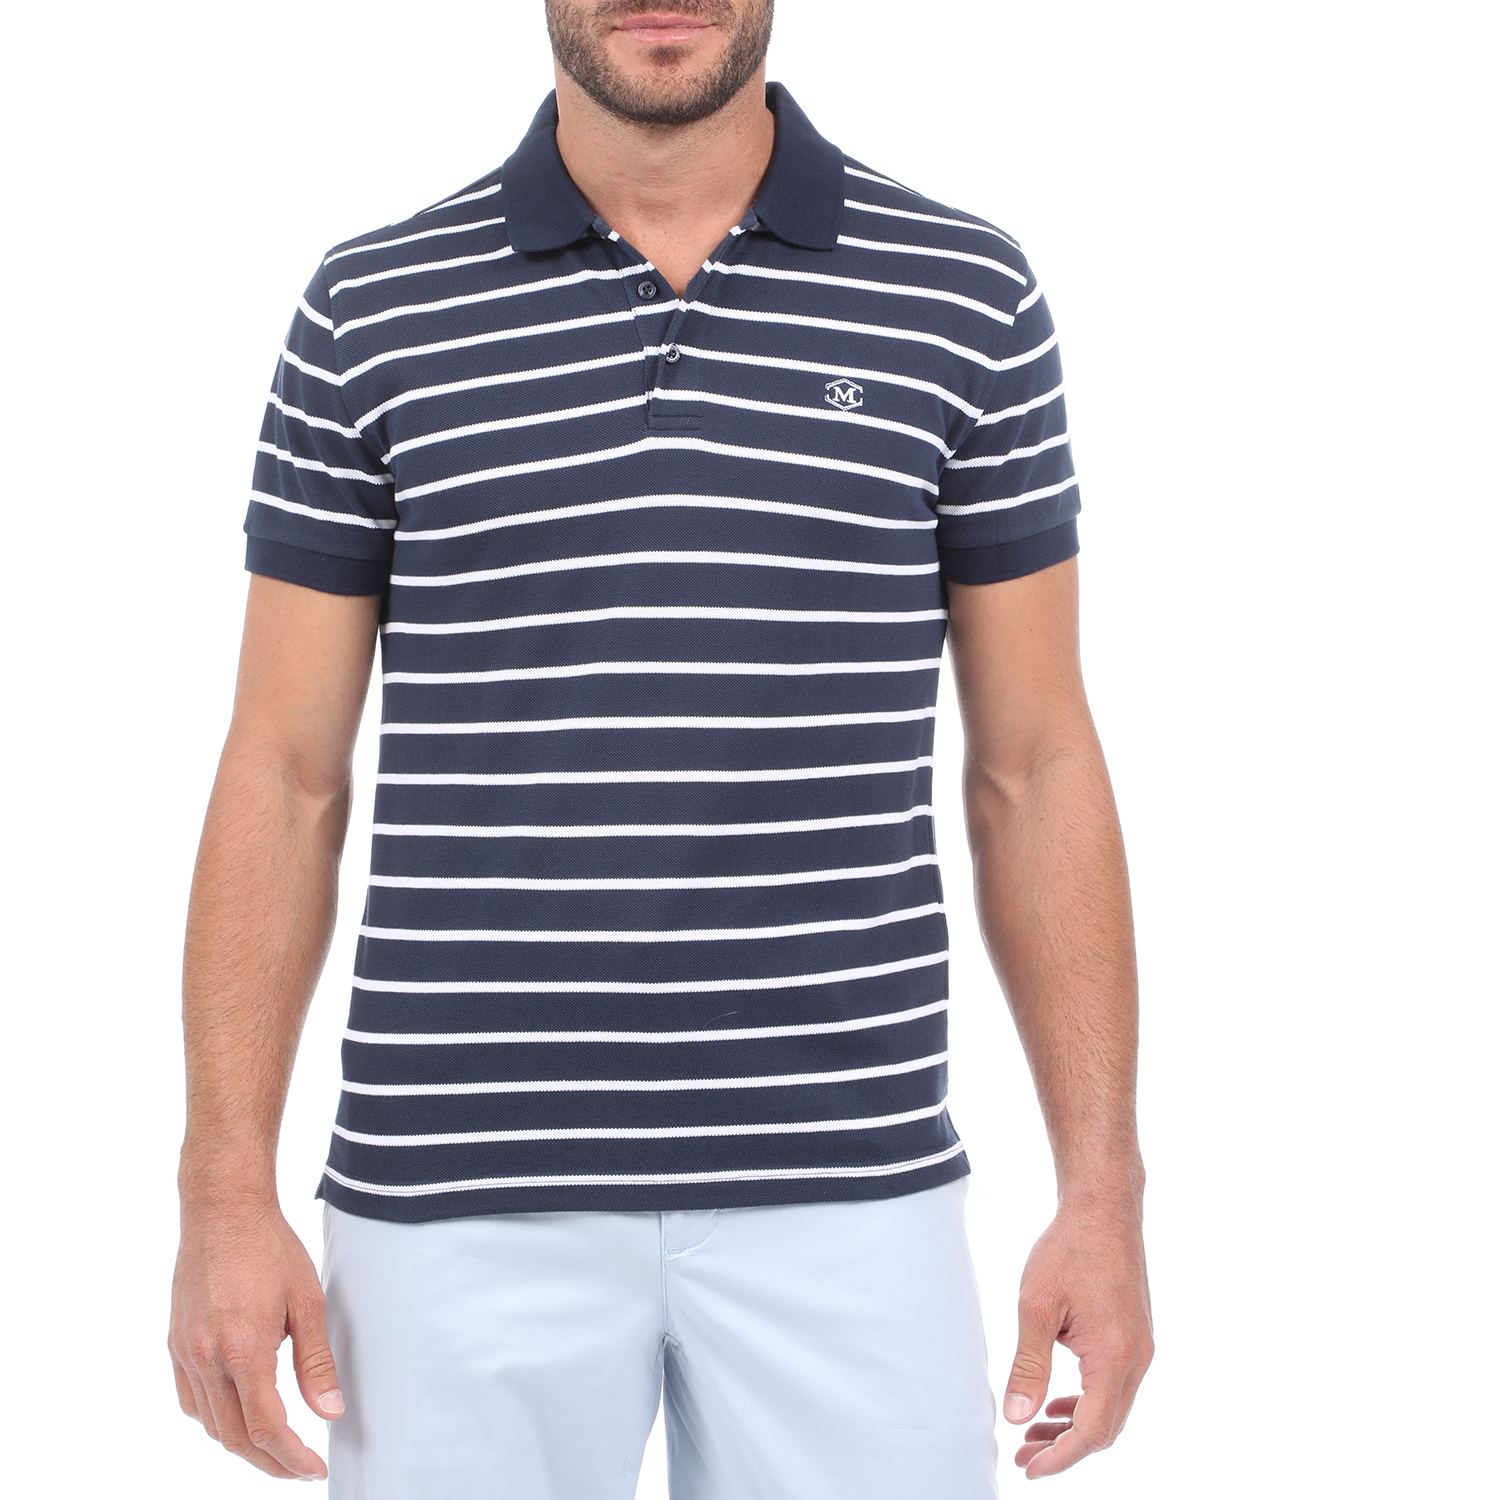 Ανδρικά/Ρούχα/Μπλούζες/Πόλο MARTIN & CO - Ανδρική polo μπλούζα MARTIN & CO μπλε λευκή